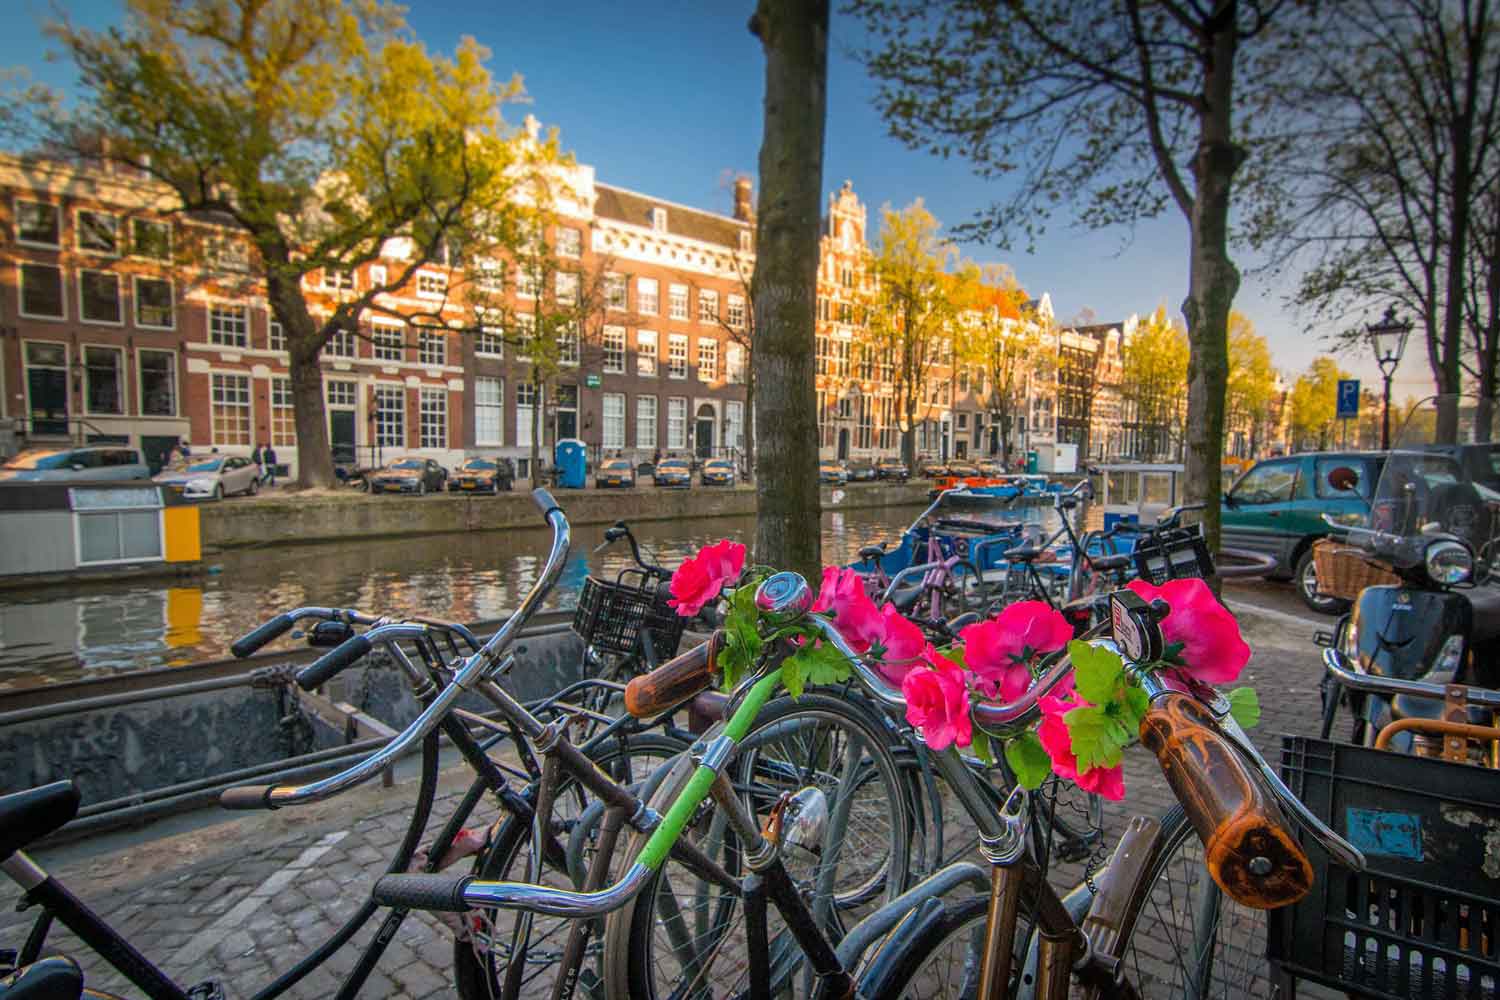 Reiseblogger verraten ihre Lieblingsplätze und Geheimtipps für Amsterdam